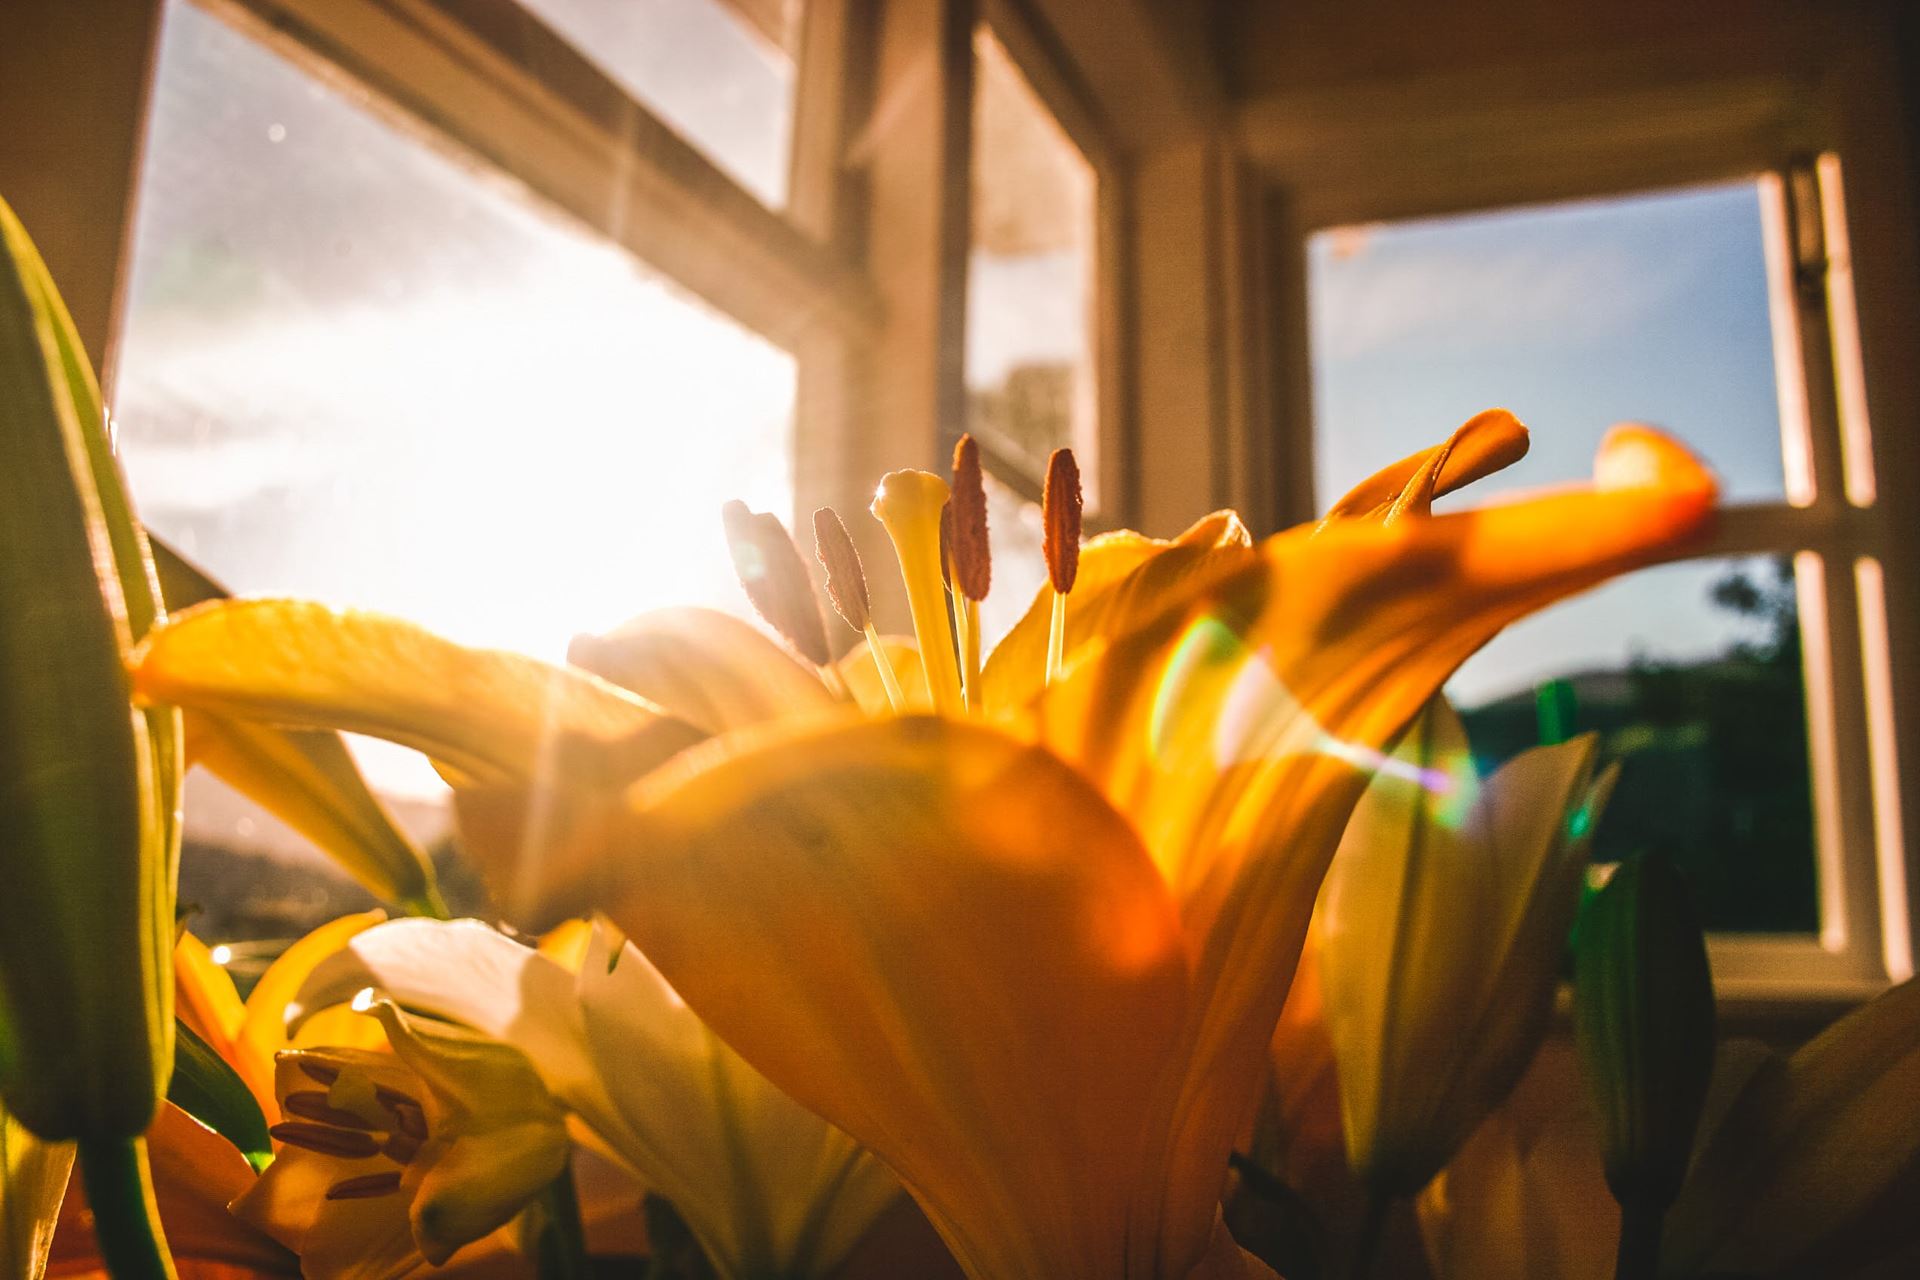 Zon door ramen op bloem